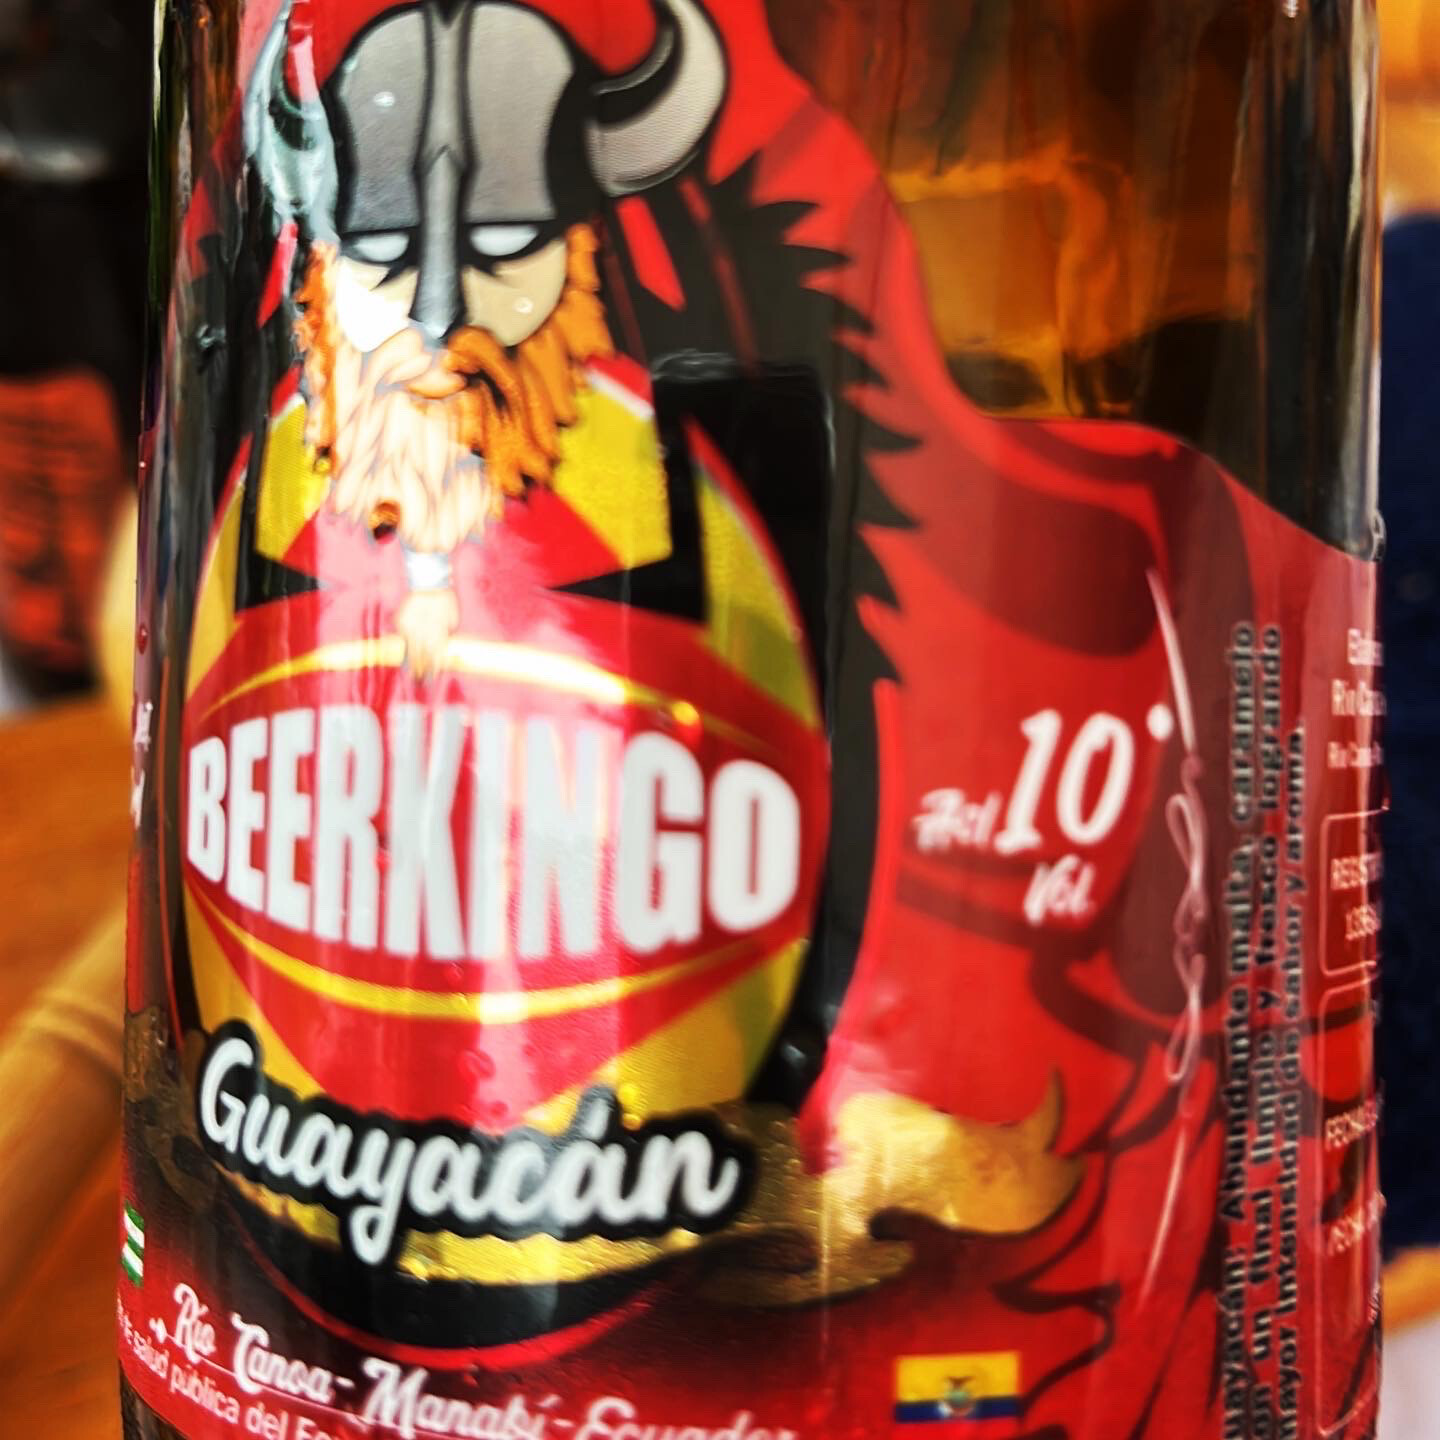 Beerkingo Guayacan